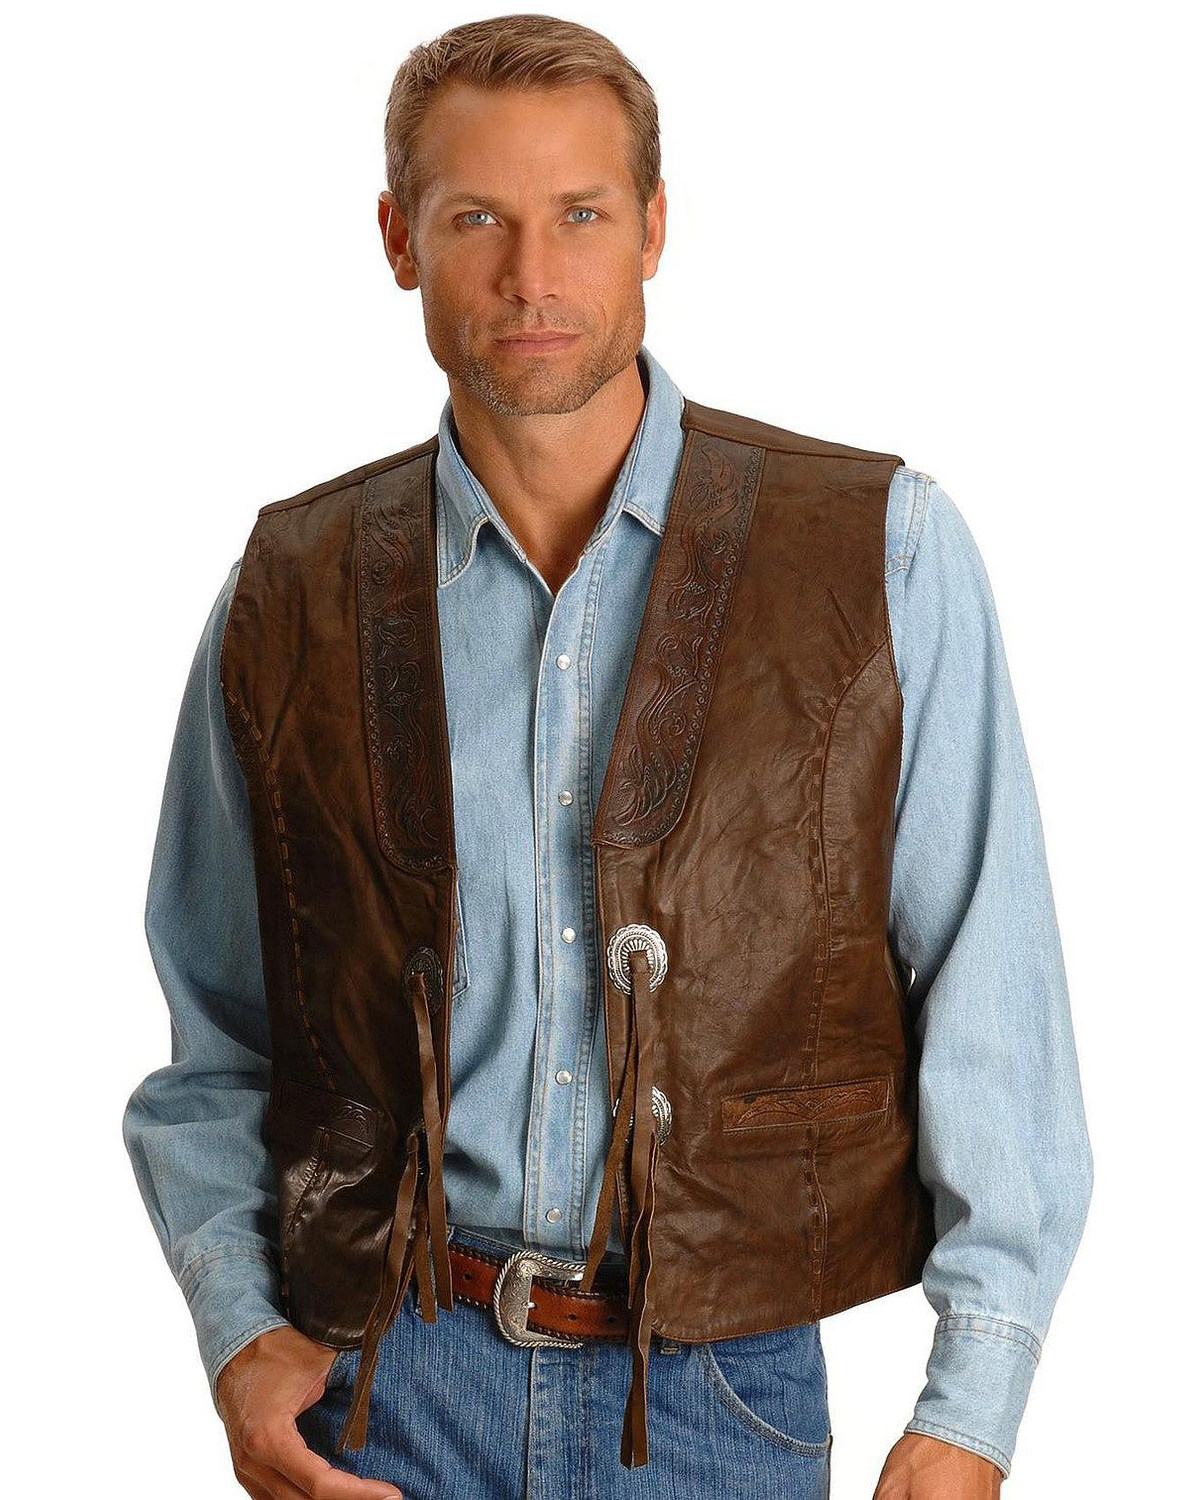 Kobler Tooled Leather Vest